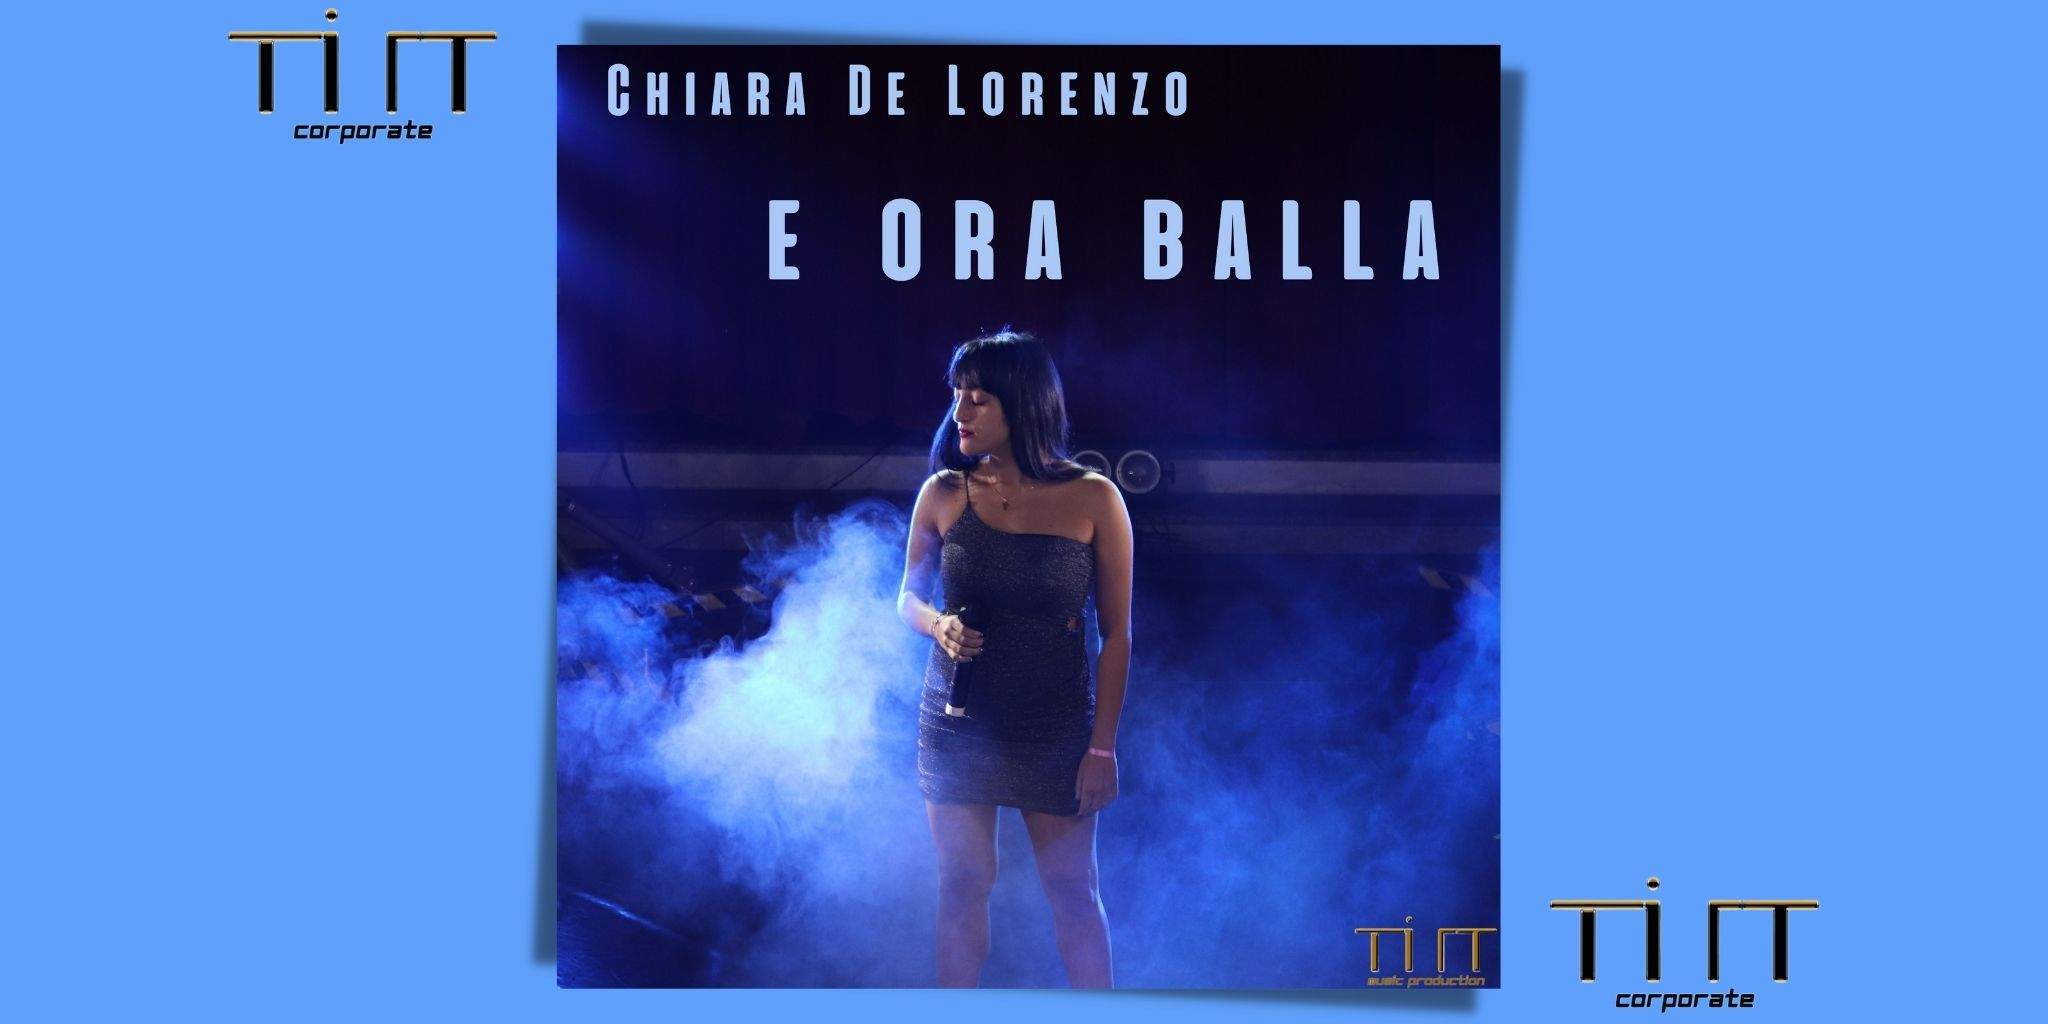 E ORA BALLA è il nuovo attesissimo brano di Chiara De Lorenzo